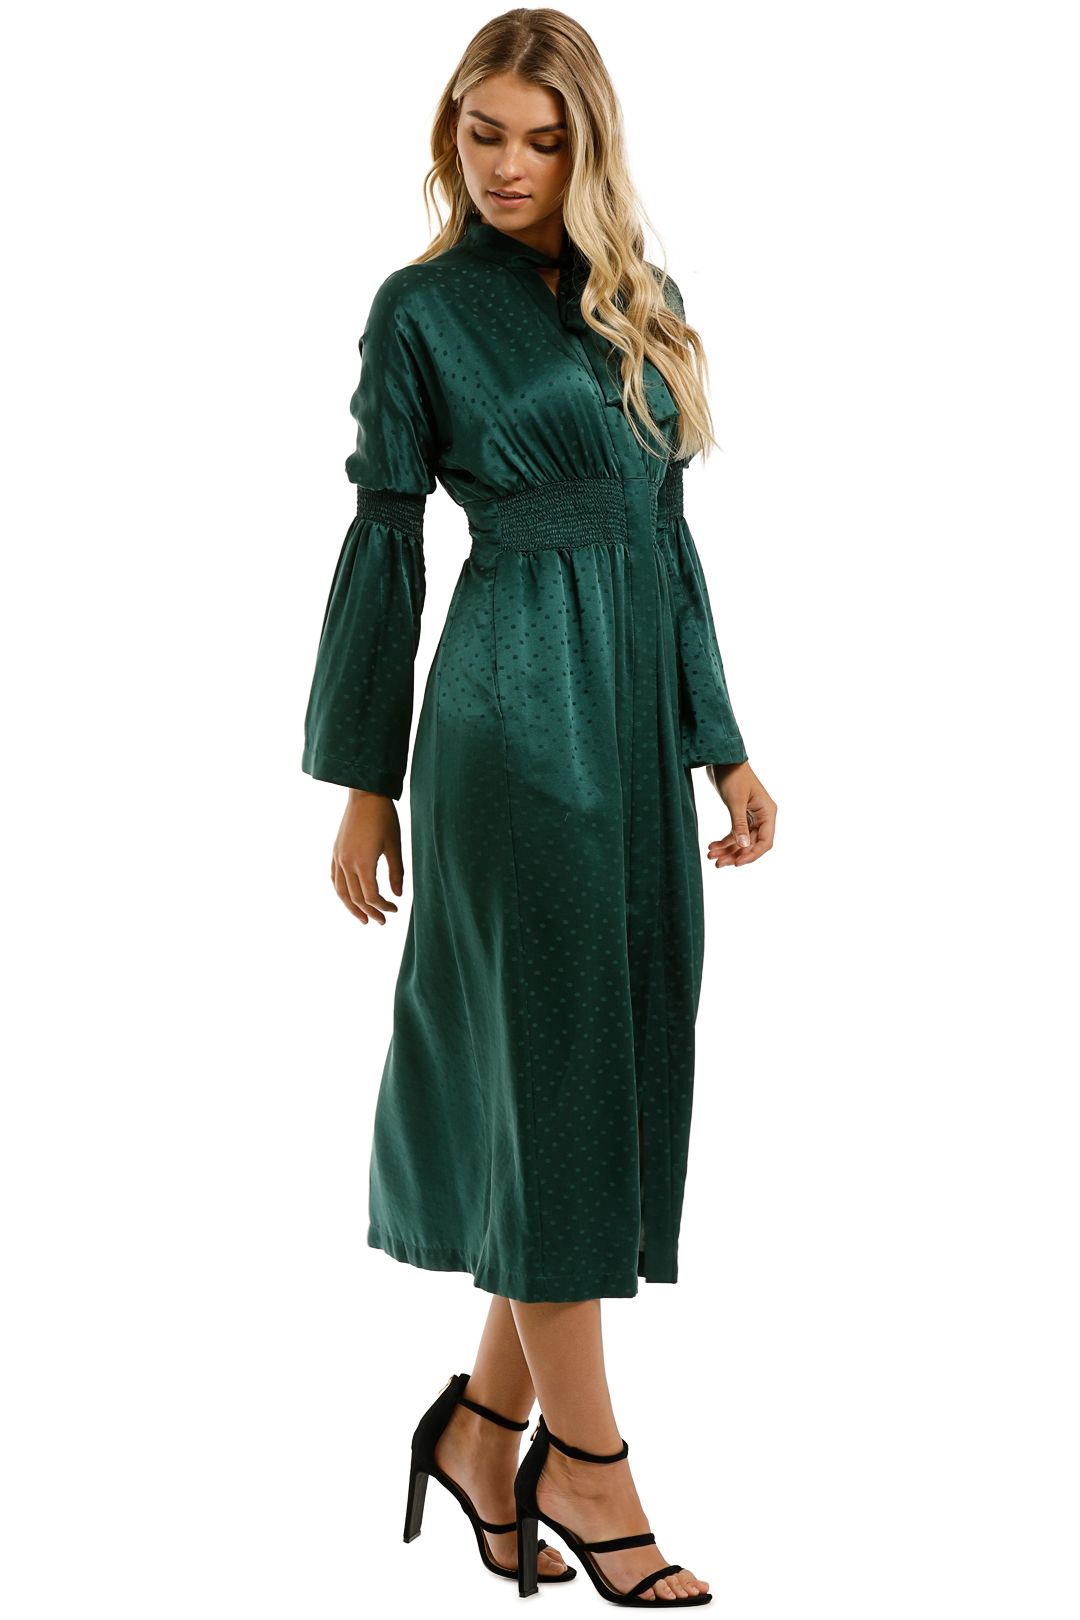 KITX-Essence-Spot-Shirred-Dress-Emerald-Side